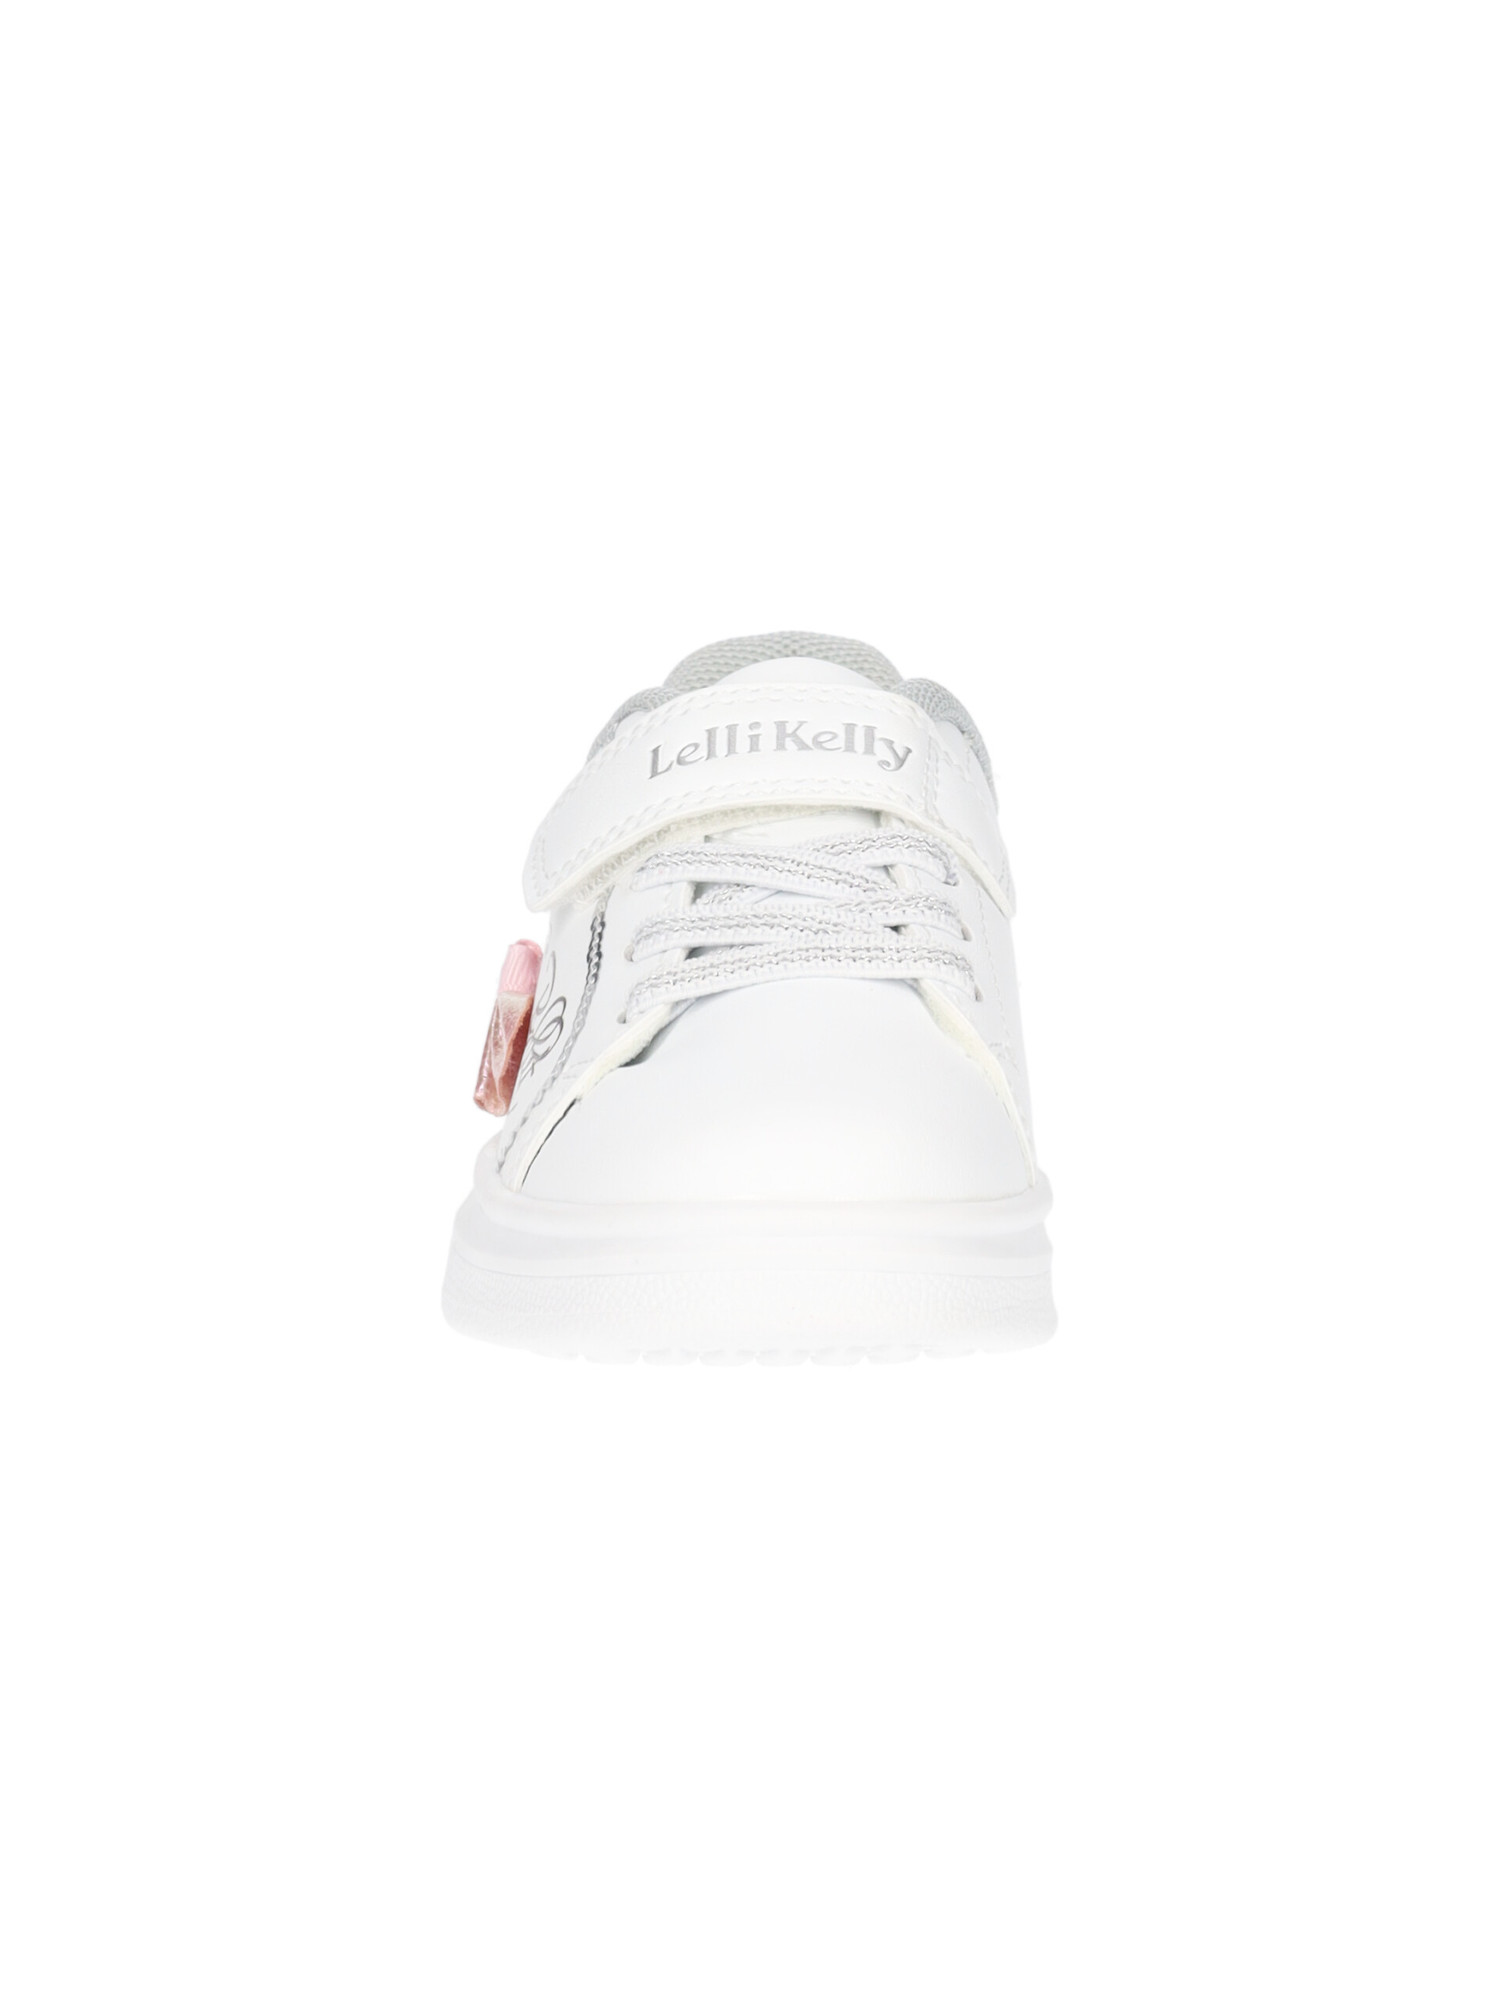 sneaker-lelli-kelly-mille-stelle-da-bambina-bianca-924710